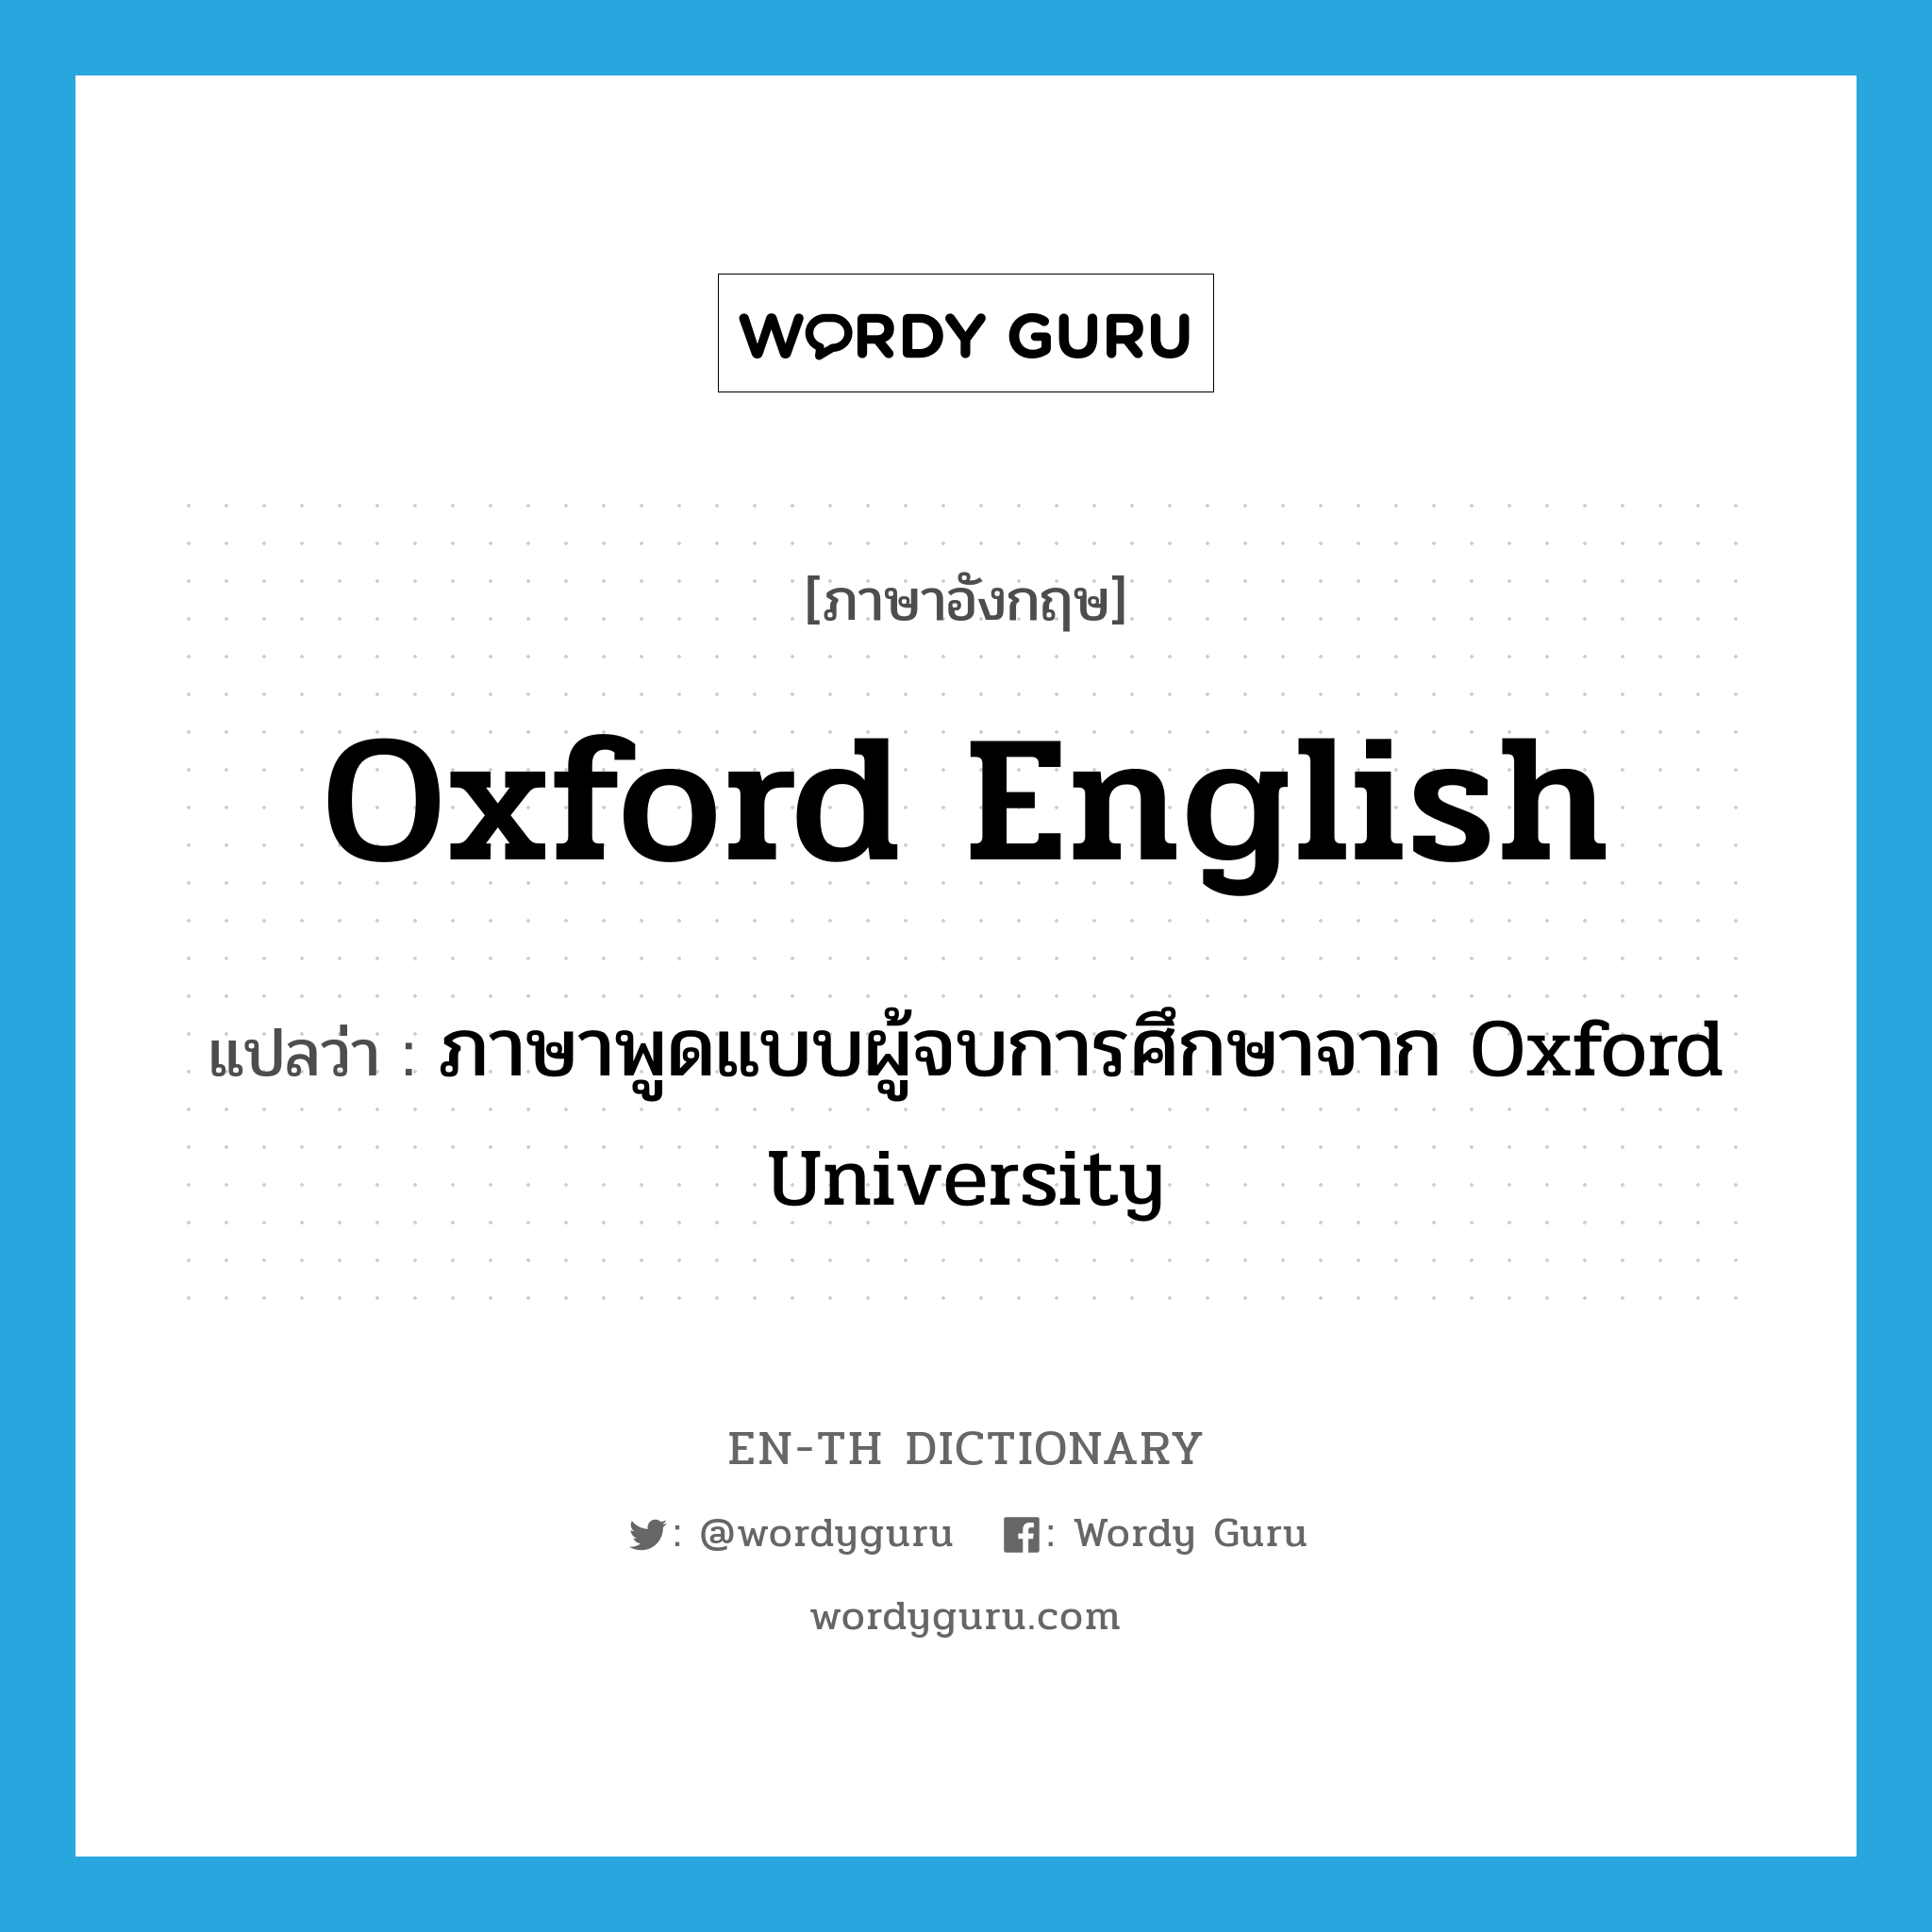 ภาษาพูดแบบผู้จบการศึกษาจาก Oxford University ภาษาอังกฤษ?, คำศัพท์ภาษาอังกฤษ ภาษาพูดแบบผู้จบการศึกษาจาก Oxford University แปลว่า Oxford English ประเภท N หมวด N